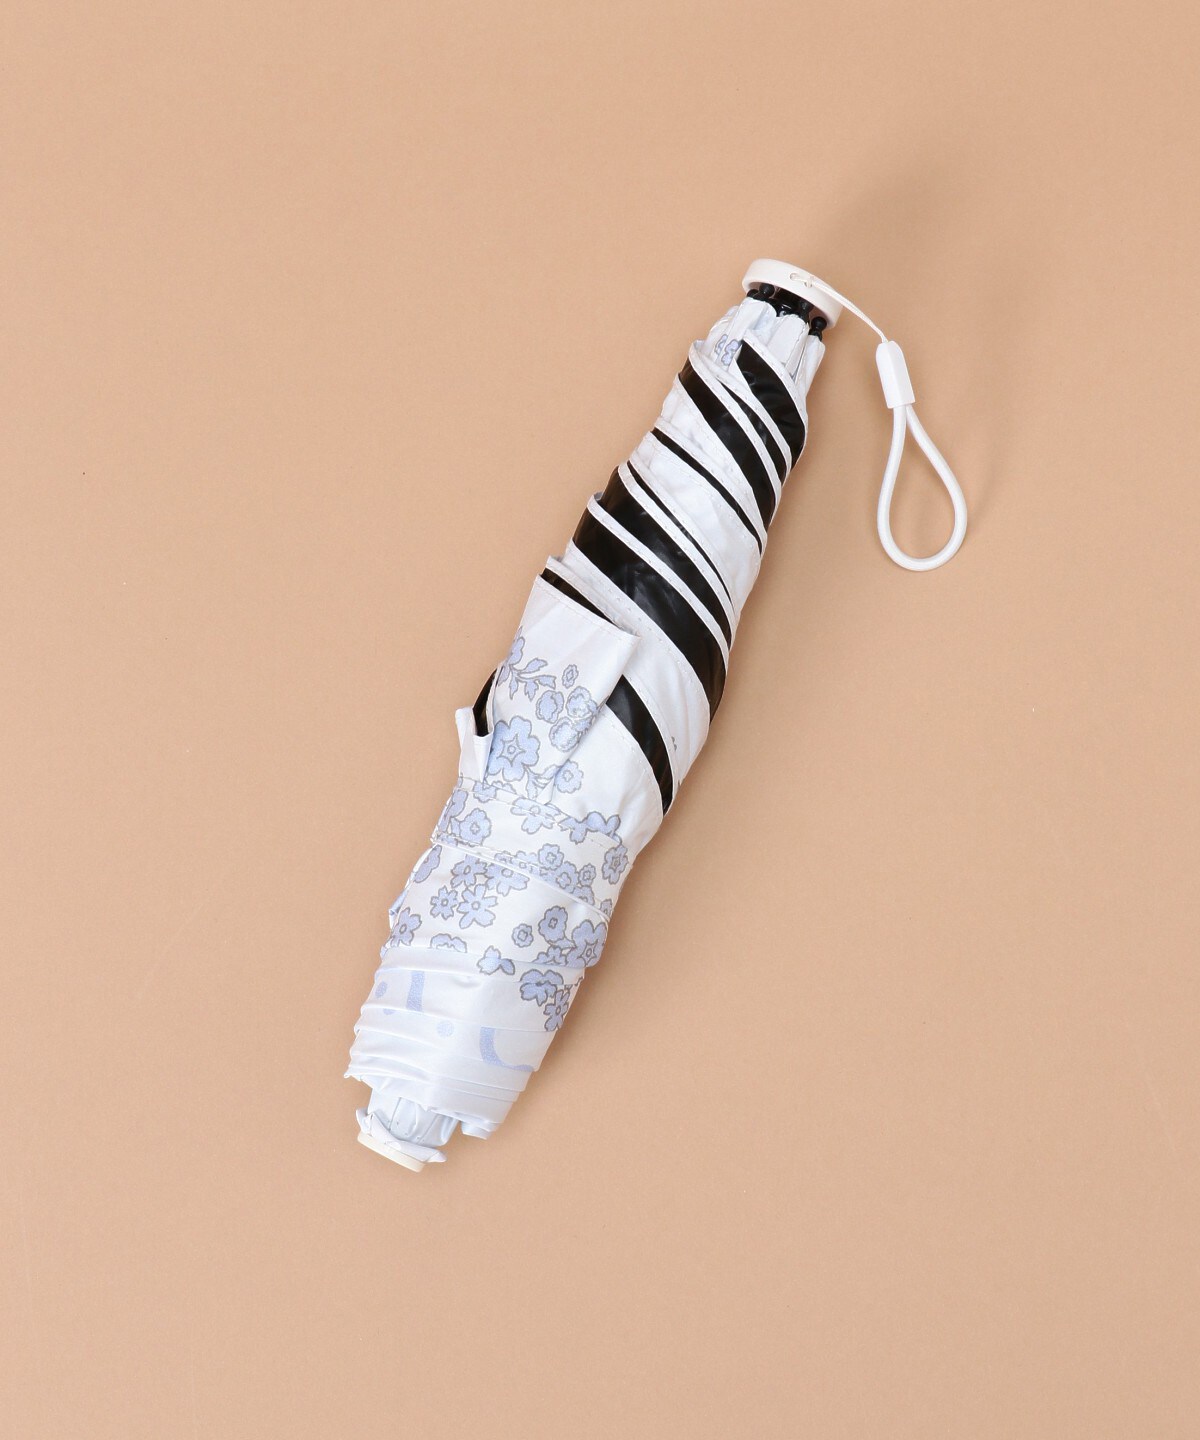 9660円 多様な サマンサタバサ Samantha Thavasa 折りたたみ傘 オリジナルブーケ柄 オフホワイト